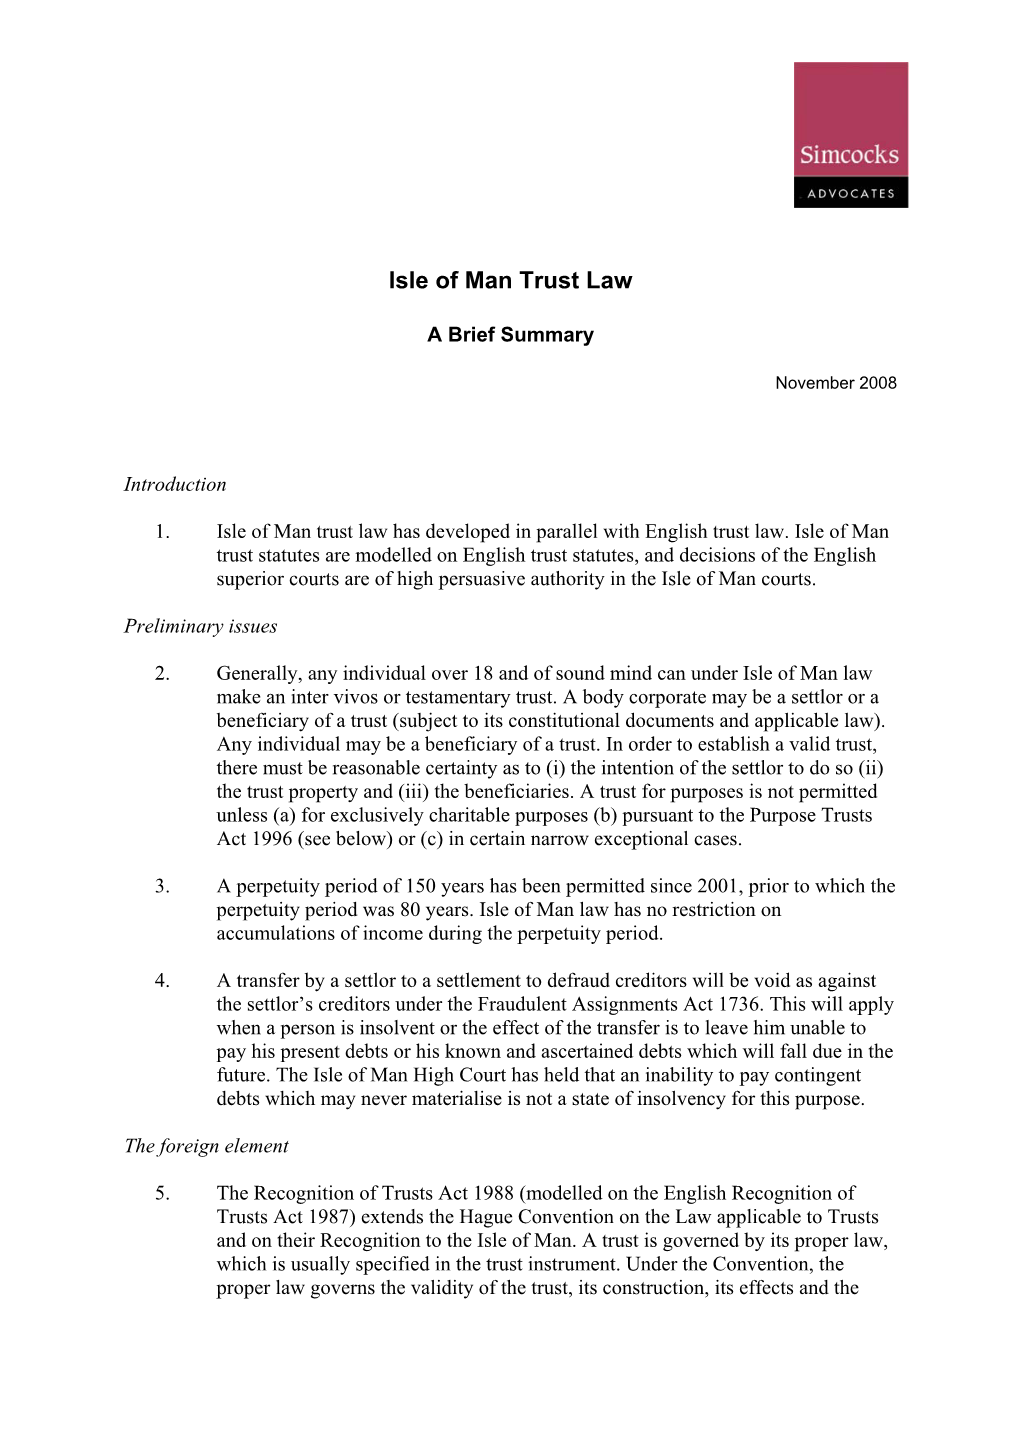 Isle of Man Trust Law – a Brief Summary